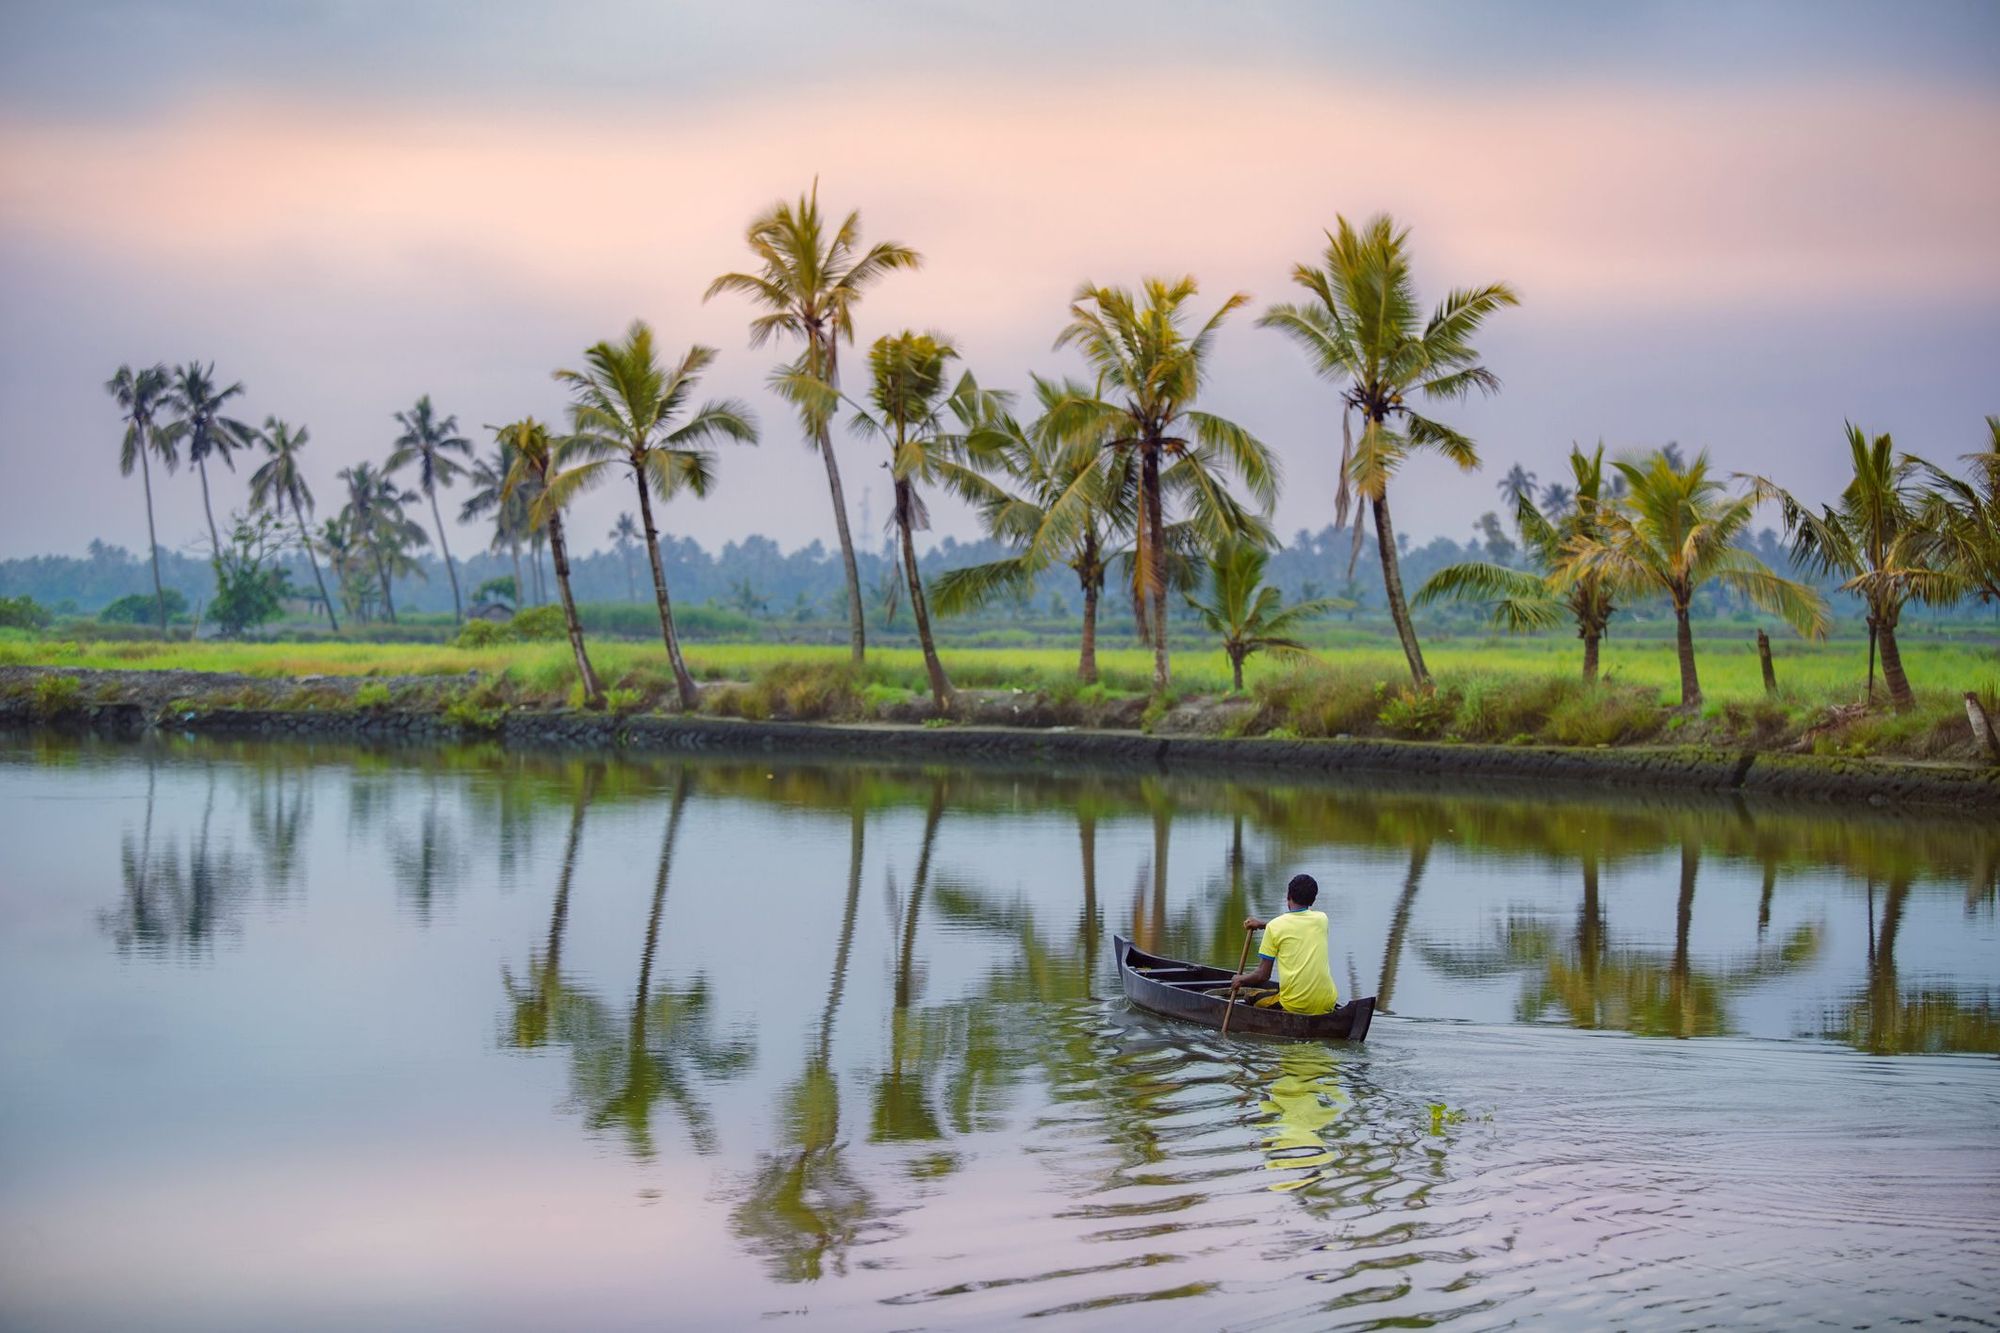 Khí hậu nhiệt đới của Kerala, ở mũi phía nam của Ấn Độ, tạo cảm giác như một thế giới khác xa với các sa mạc ở phía bắc. Đó là lý tưởng cho những du khách đã từng đến thăm Ấn Độ và muốn hiểu rõ hơn về sự tương phản của nó. Bạn sẽ tìm thấy nghệ thuật, văn hóa, rừng, gia vị và vùng nước đọng Alleppey nổi tiếng. Các tuyến đường thủy lung linh là một mạng lưới kênh rạch và sông ngòi mang đến góc nhìn độc đáo về cuộc sống địa phương. Abercrombie & Kent bao gồm tất cả trong chuyến tham quan Essential Kerala kéo dài chín ngày , bao gồm một chuyến du ngoạn qua đêm trên một nhà thuyền tư nhân.